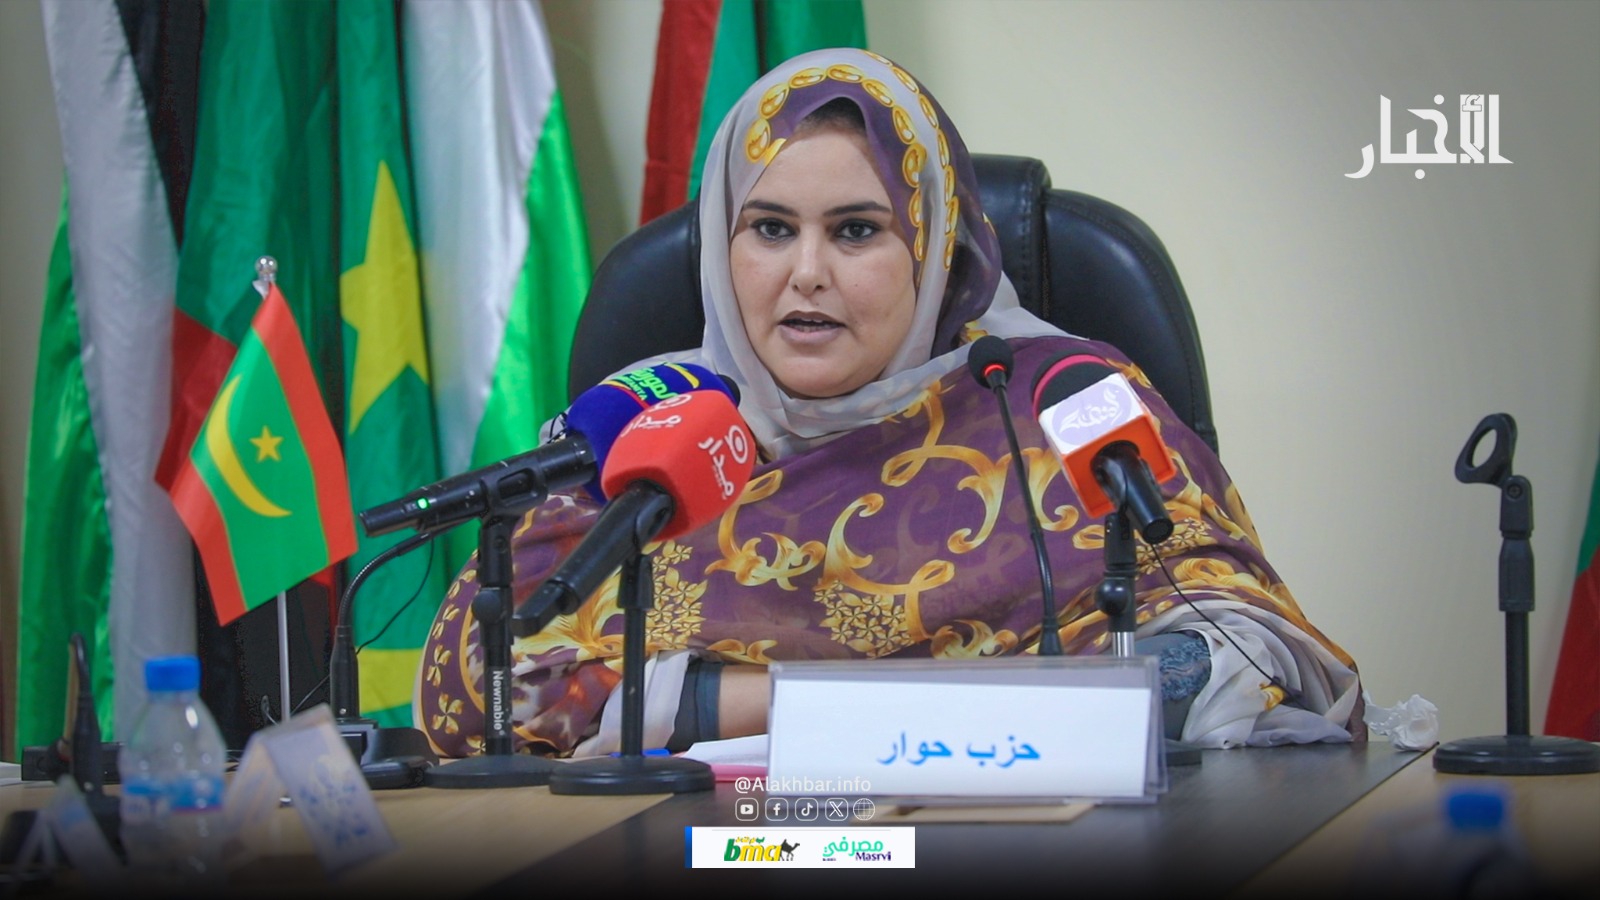 فالة ميني رئيسة حزب حوار خلال قراءتها لبيان الأحزاب الموريتانية 